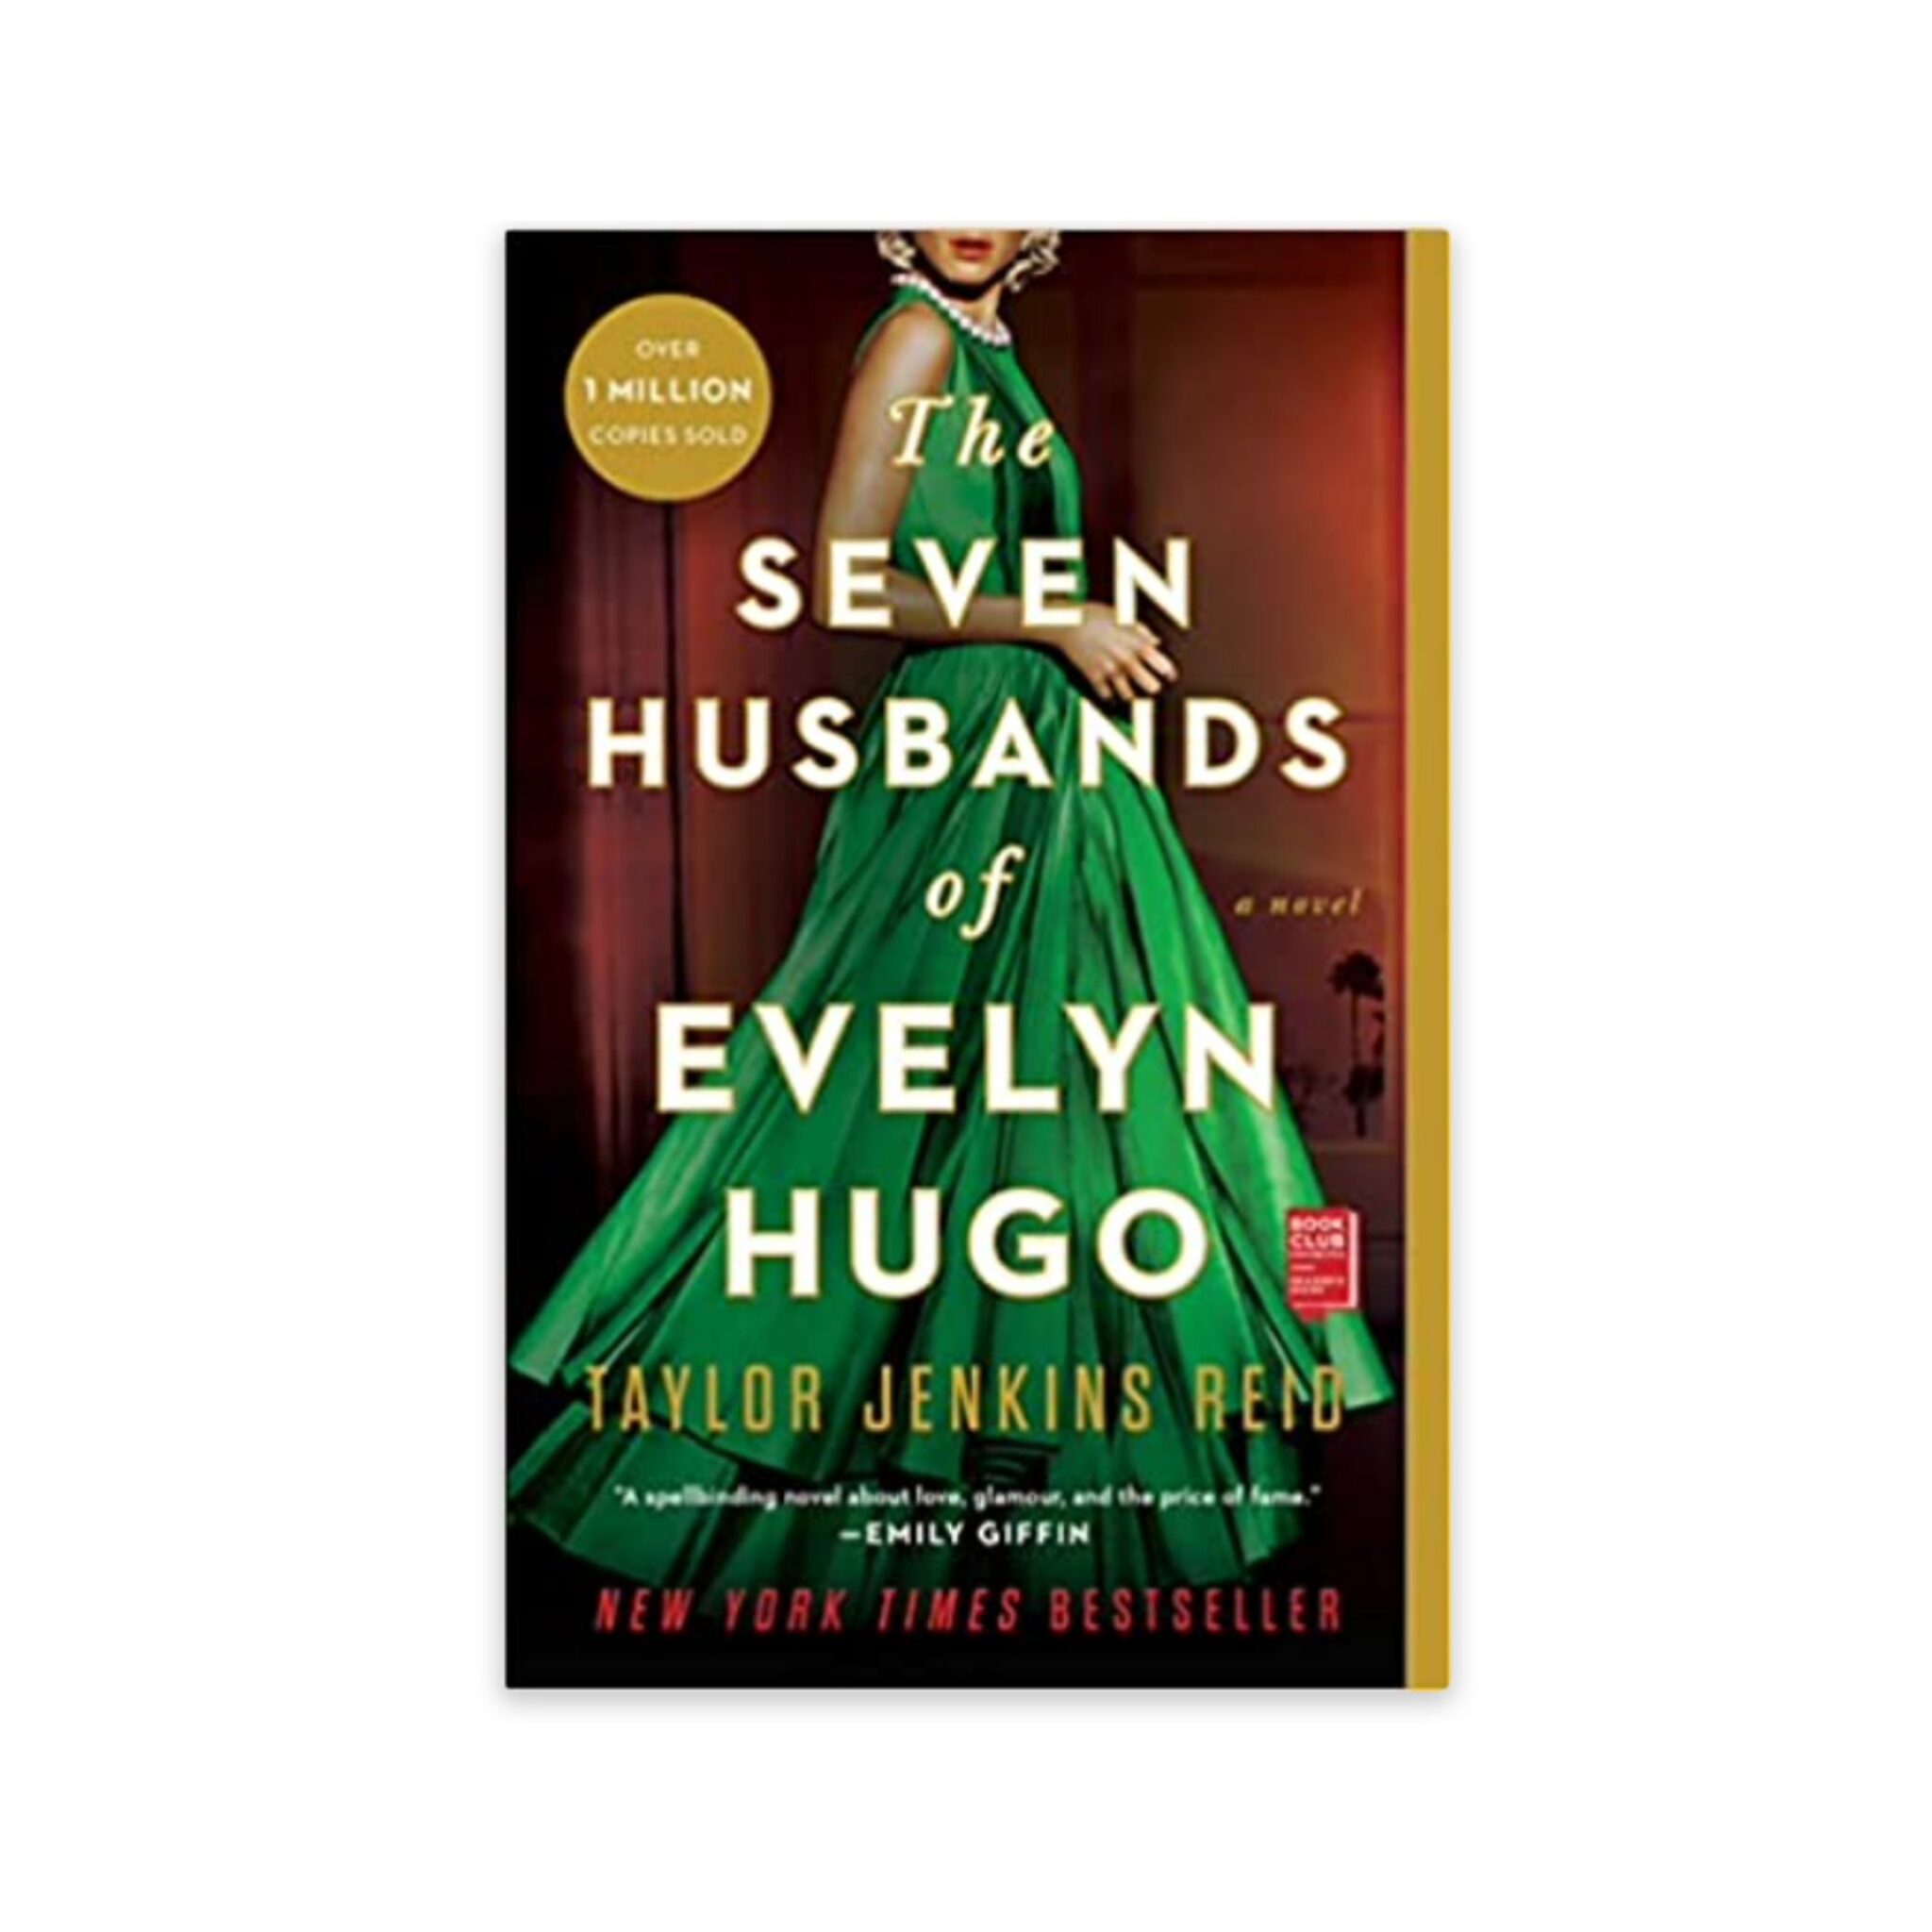 Seven husbands of Evelyn Hugo book review